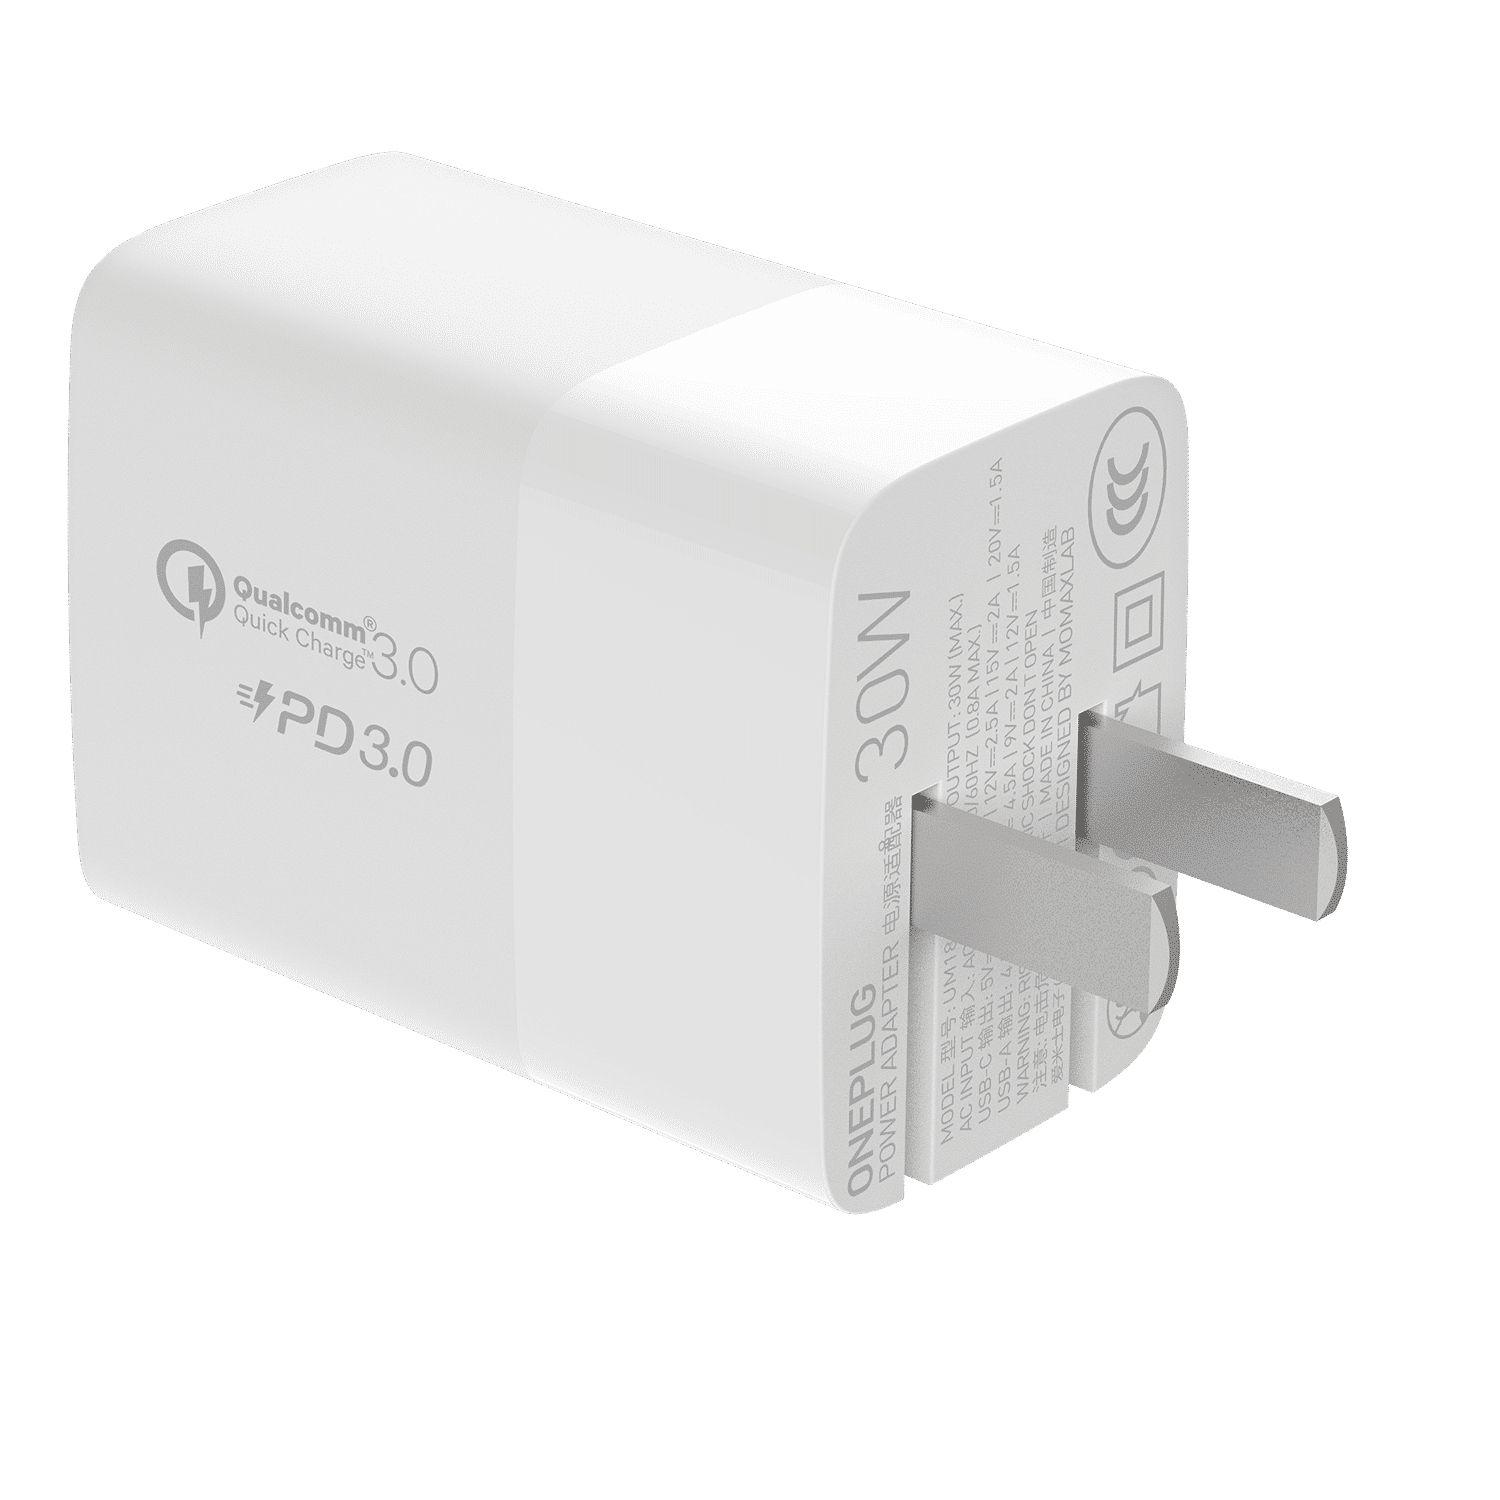 หัวปลั๊กชาร์จเร็ว Momax รุ่น ONE Plug 2-Port USB-C PD Charger (30W) - สีขาว